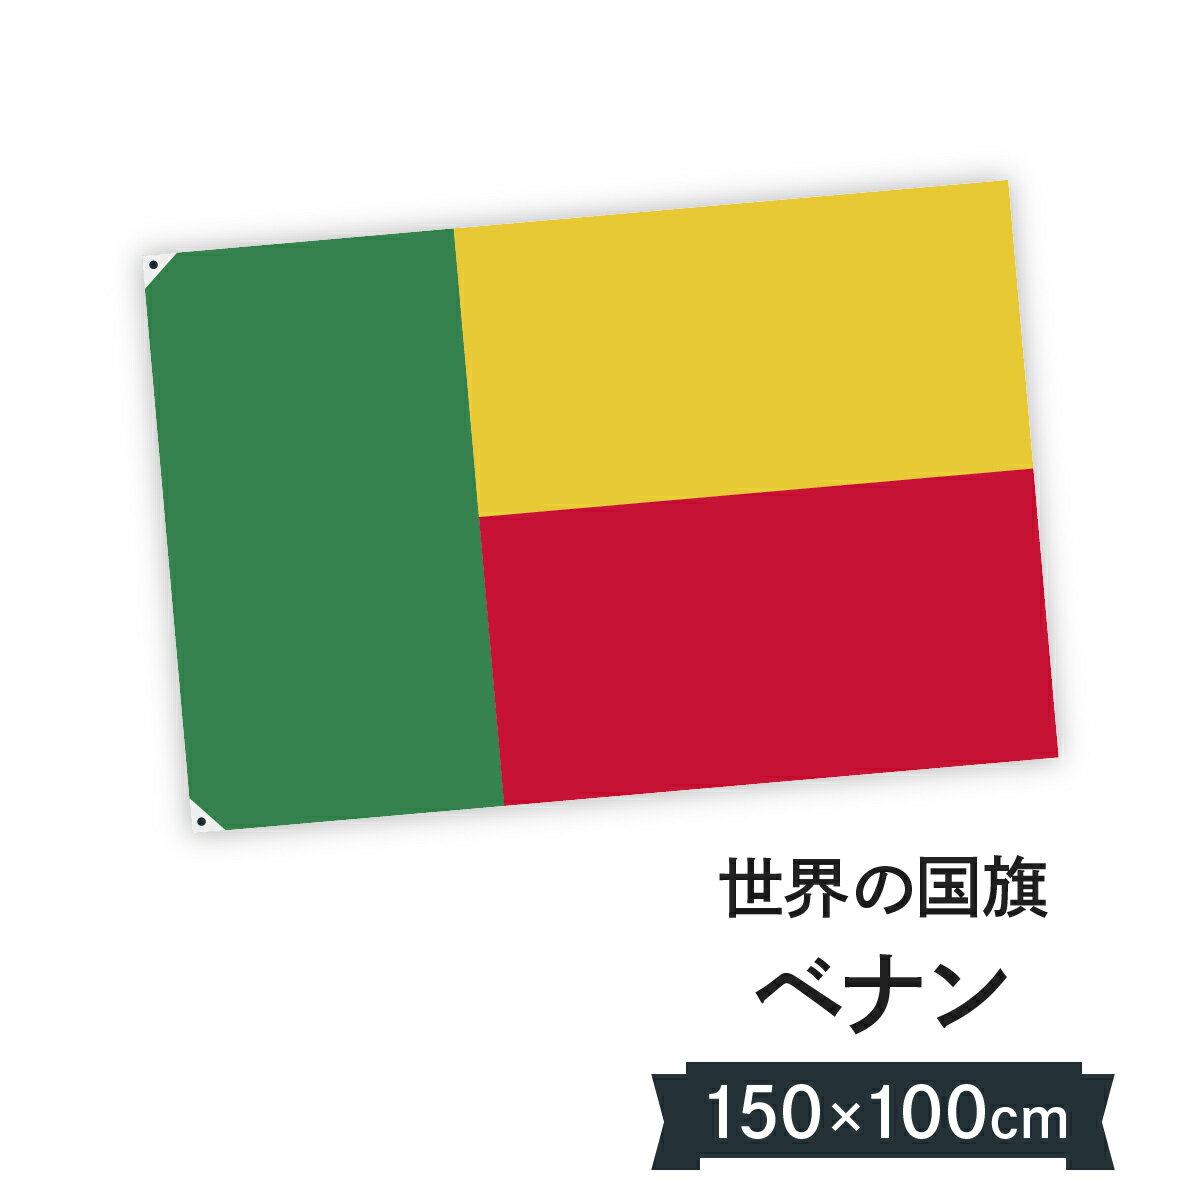 ベナン共和国 国旗 W150cm H100cm